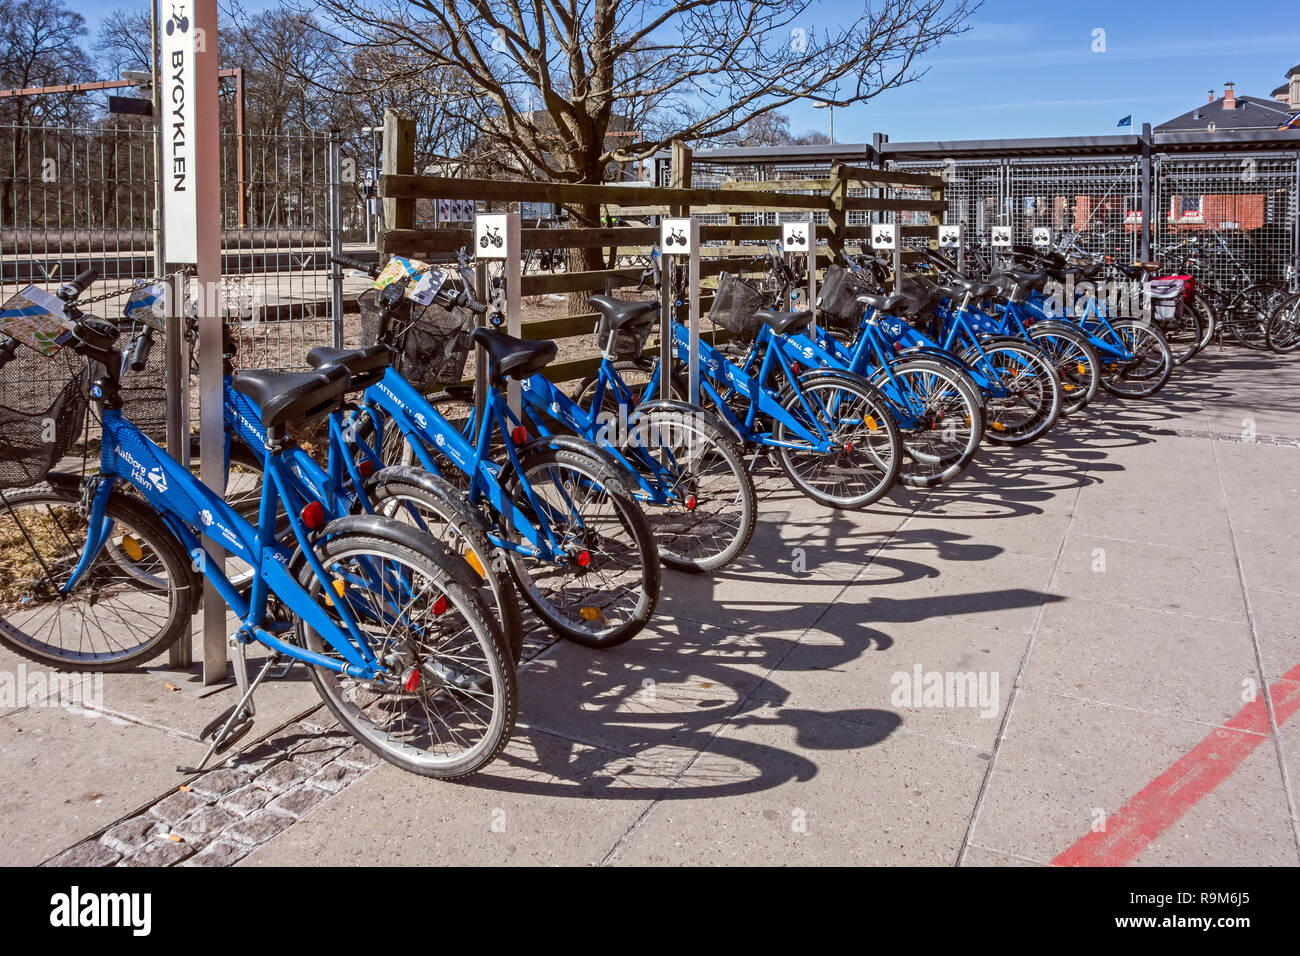 Portabiciclette con pubbliche le biciclette a noleggio presso le stazioni ferroviarie e degli autobus di John F Kennedys Plads Aalborg dello Jutland in Danimarca Europa Foto Stock